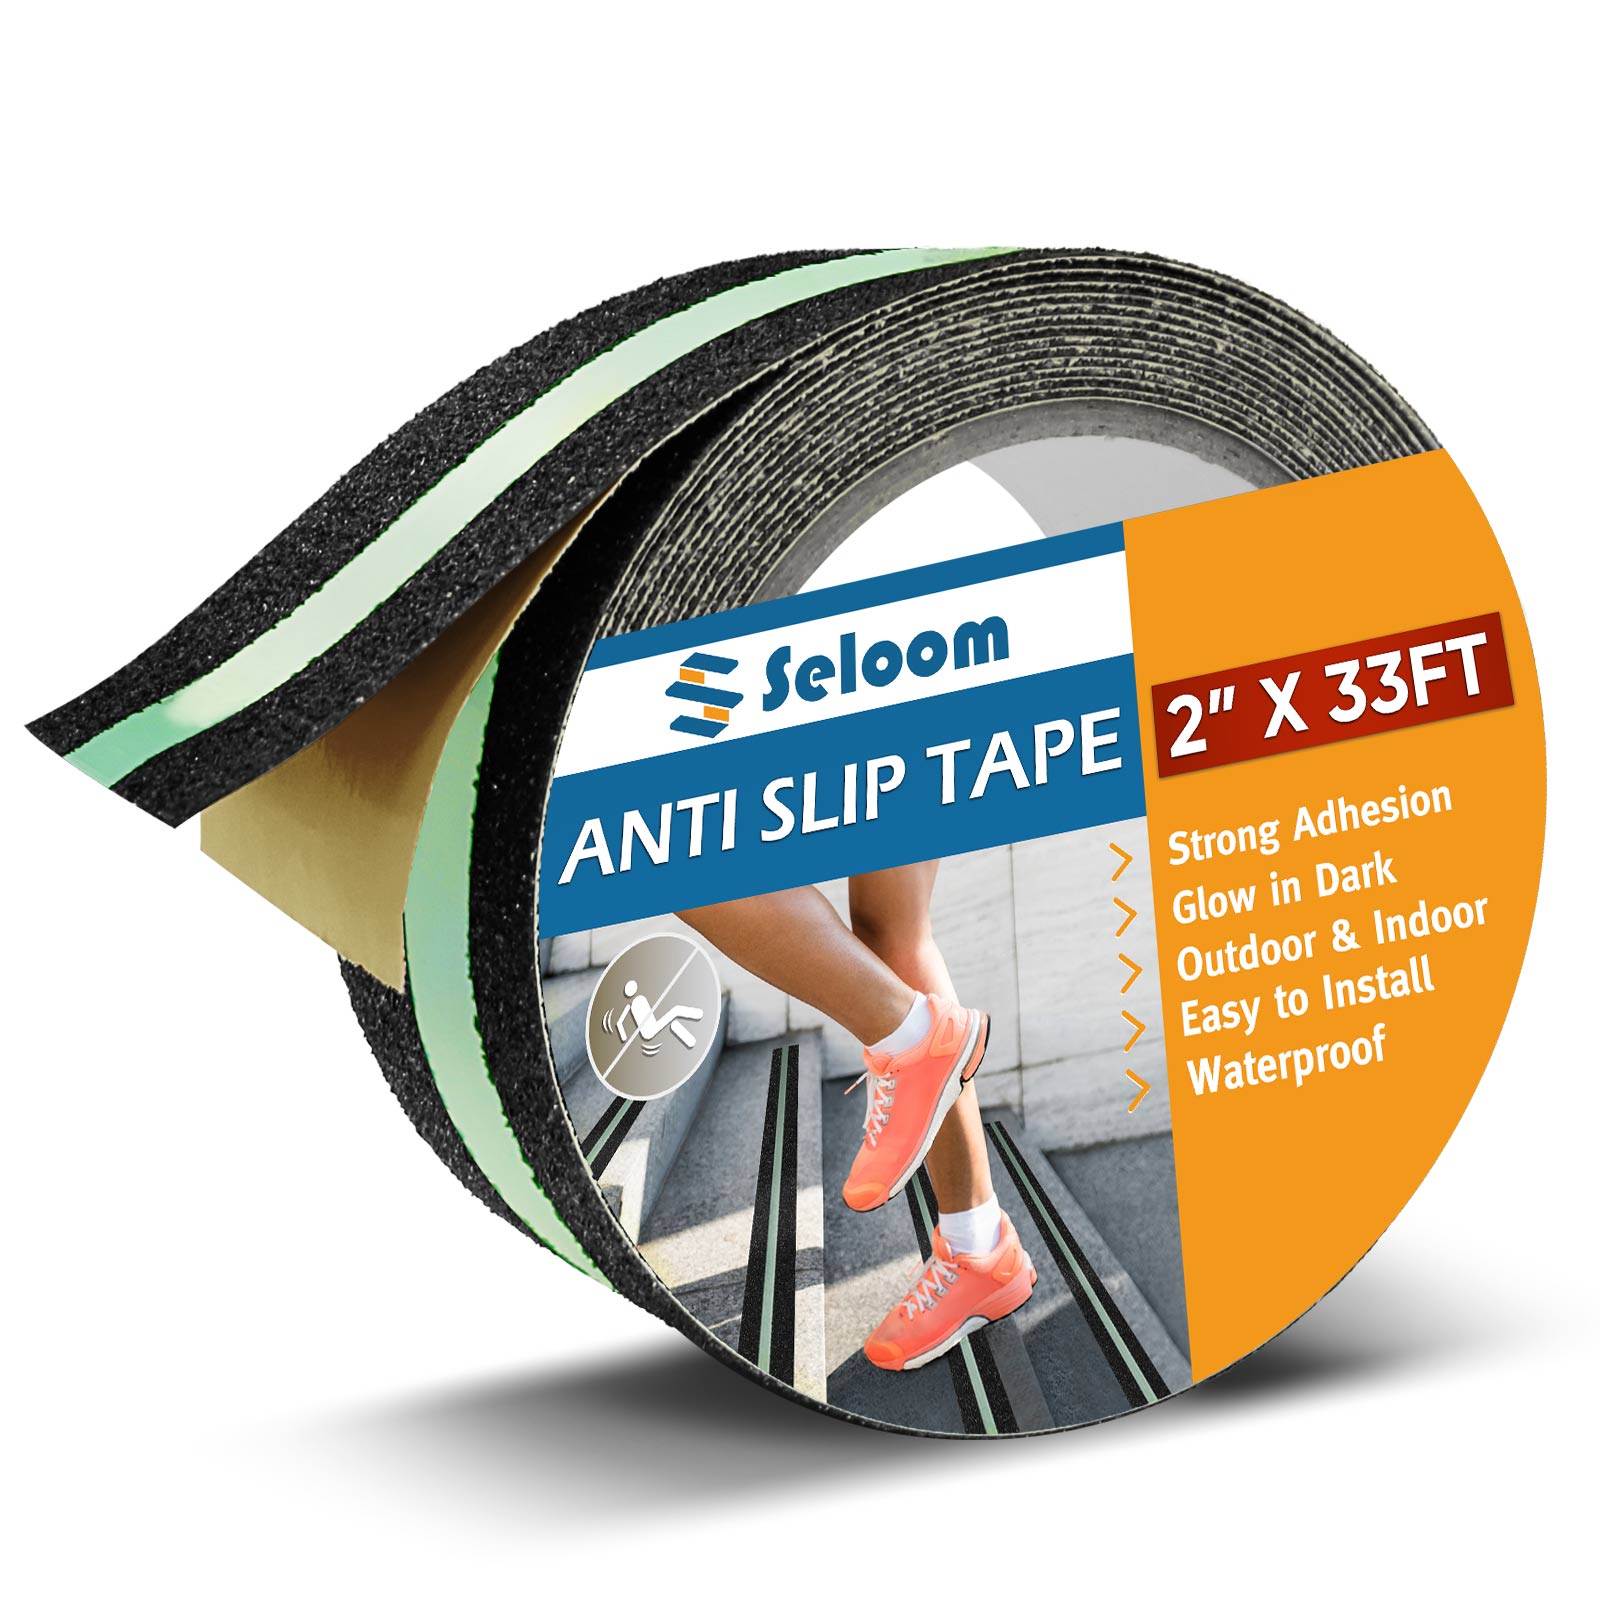 Seloom Anti Slip Tape for Stairs Outdoor/Indoor,Heavy Duty Grip Tape N